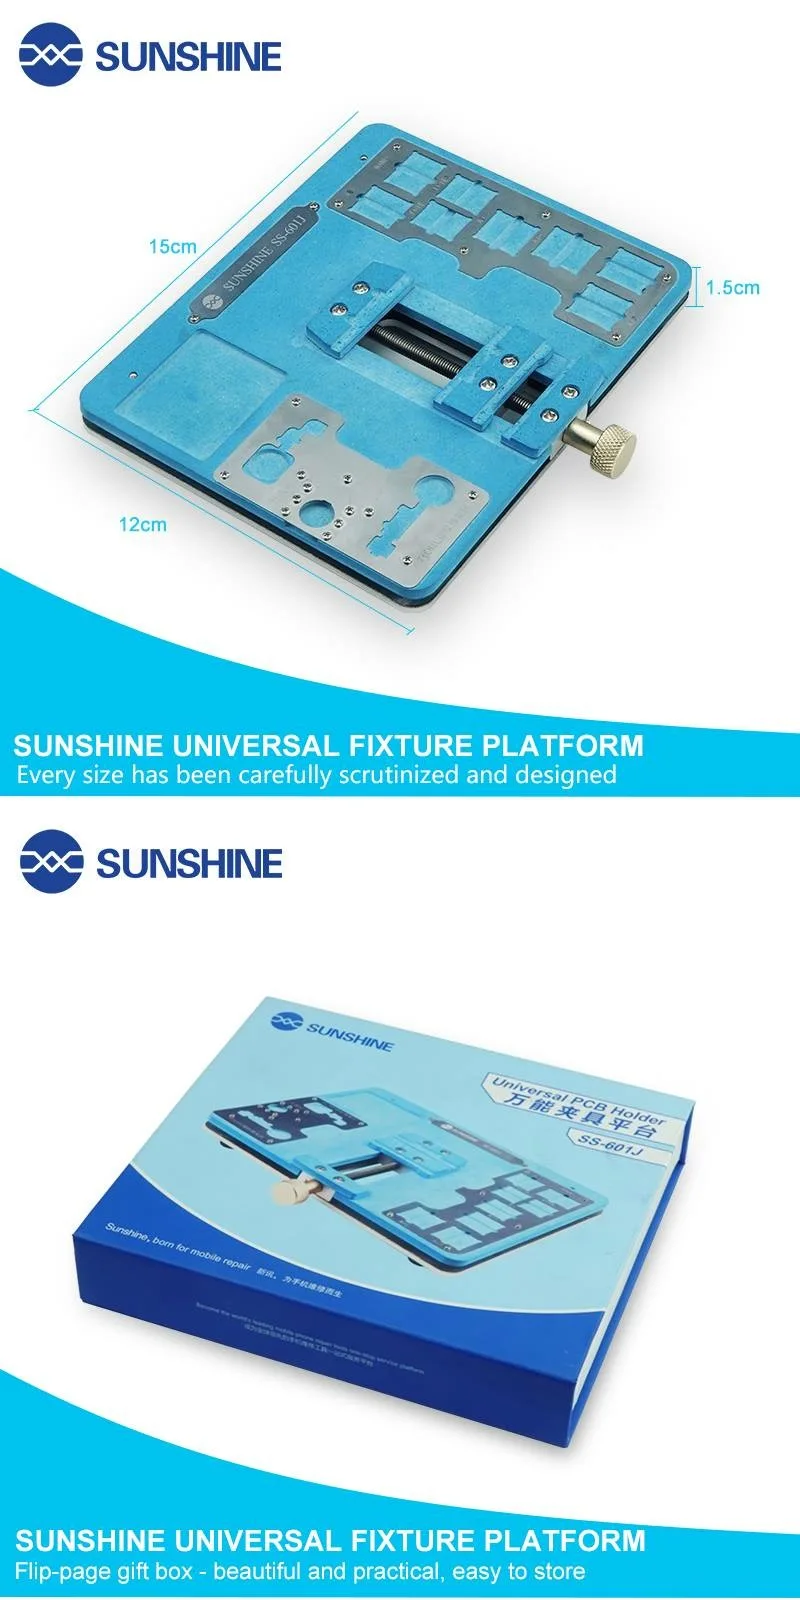 Sunshine SS-601J мобильный телефон материнская плата Универсальный светильник платформа для iphone xs max/xs/x/8/7/6s/6 plus для ремонта samsung